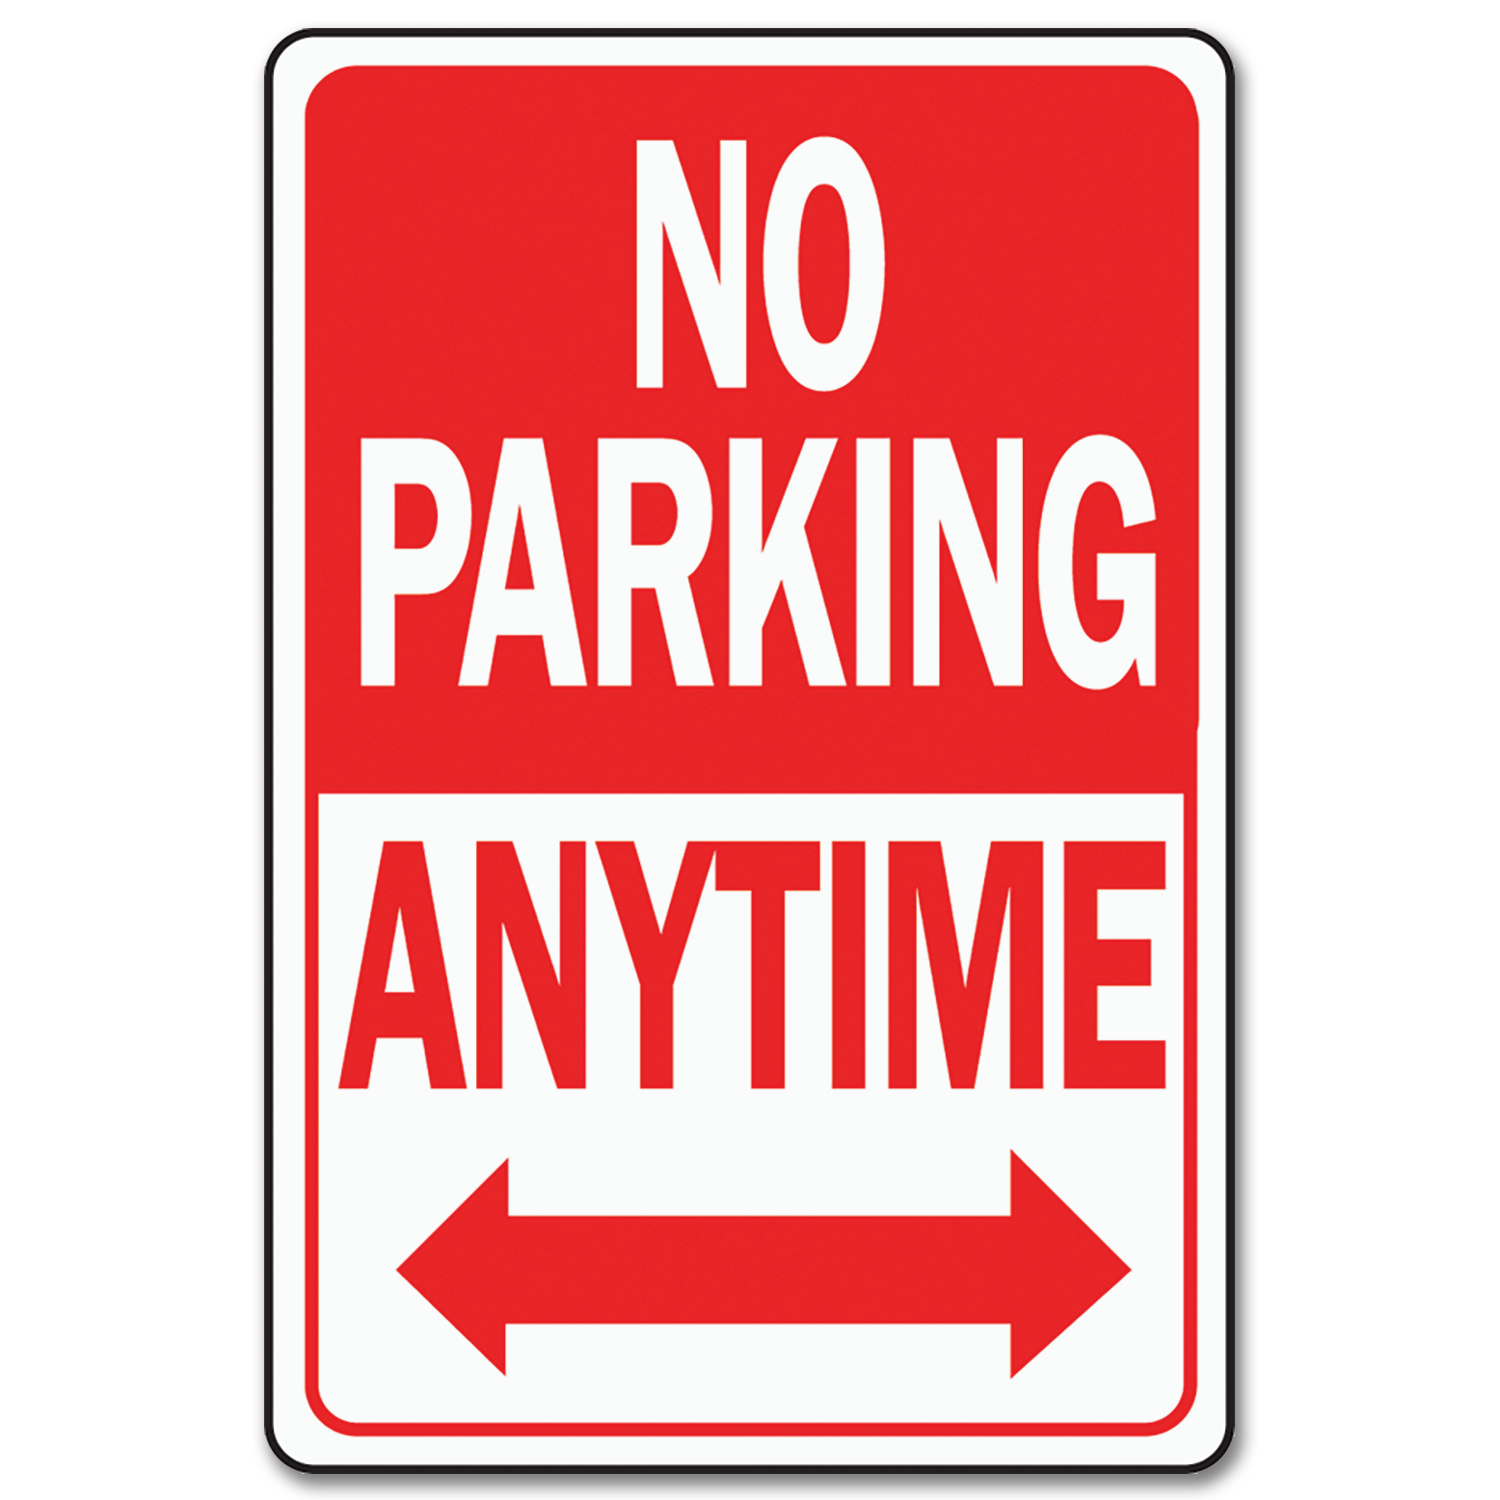 Запрет вывесок. Машины не парковать. No parking знак. No parking anytime знак. Машины у ворот не парковать.